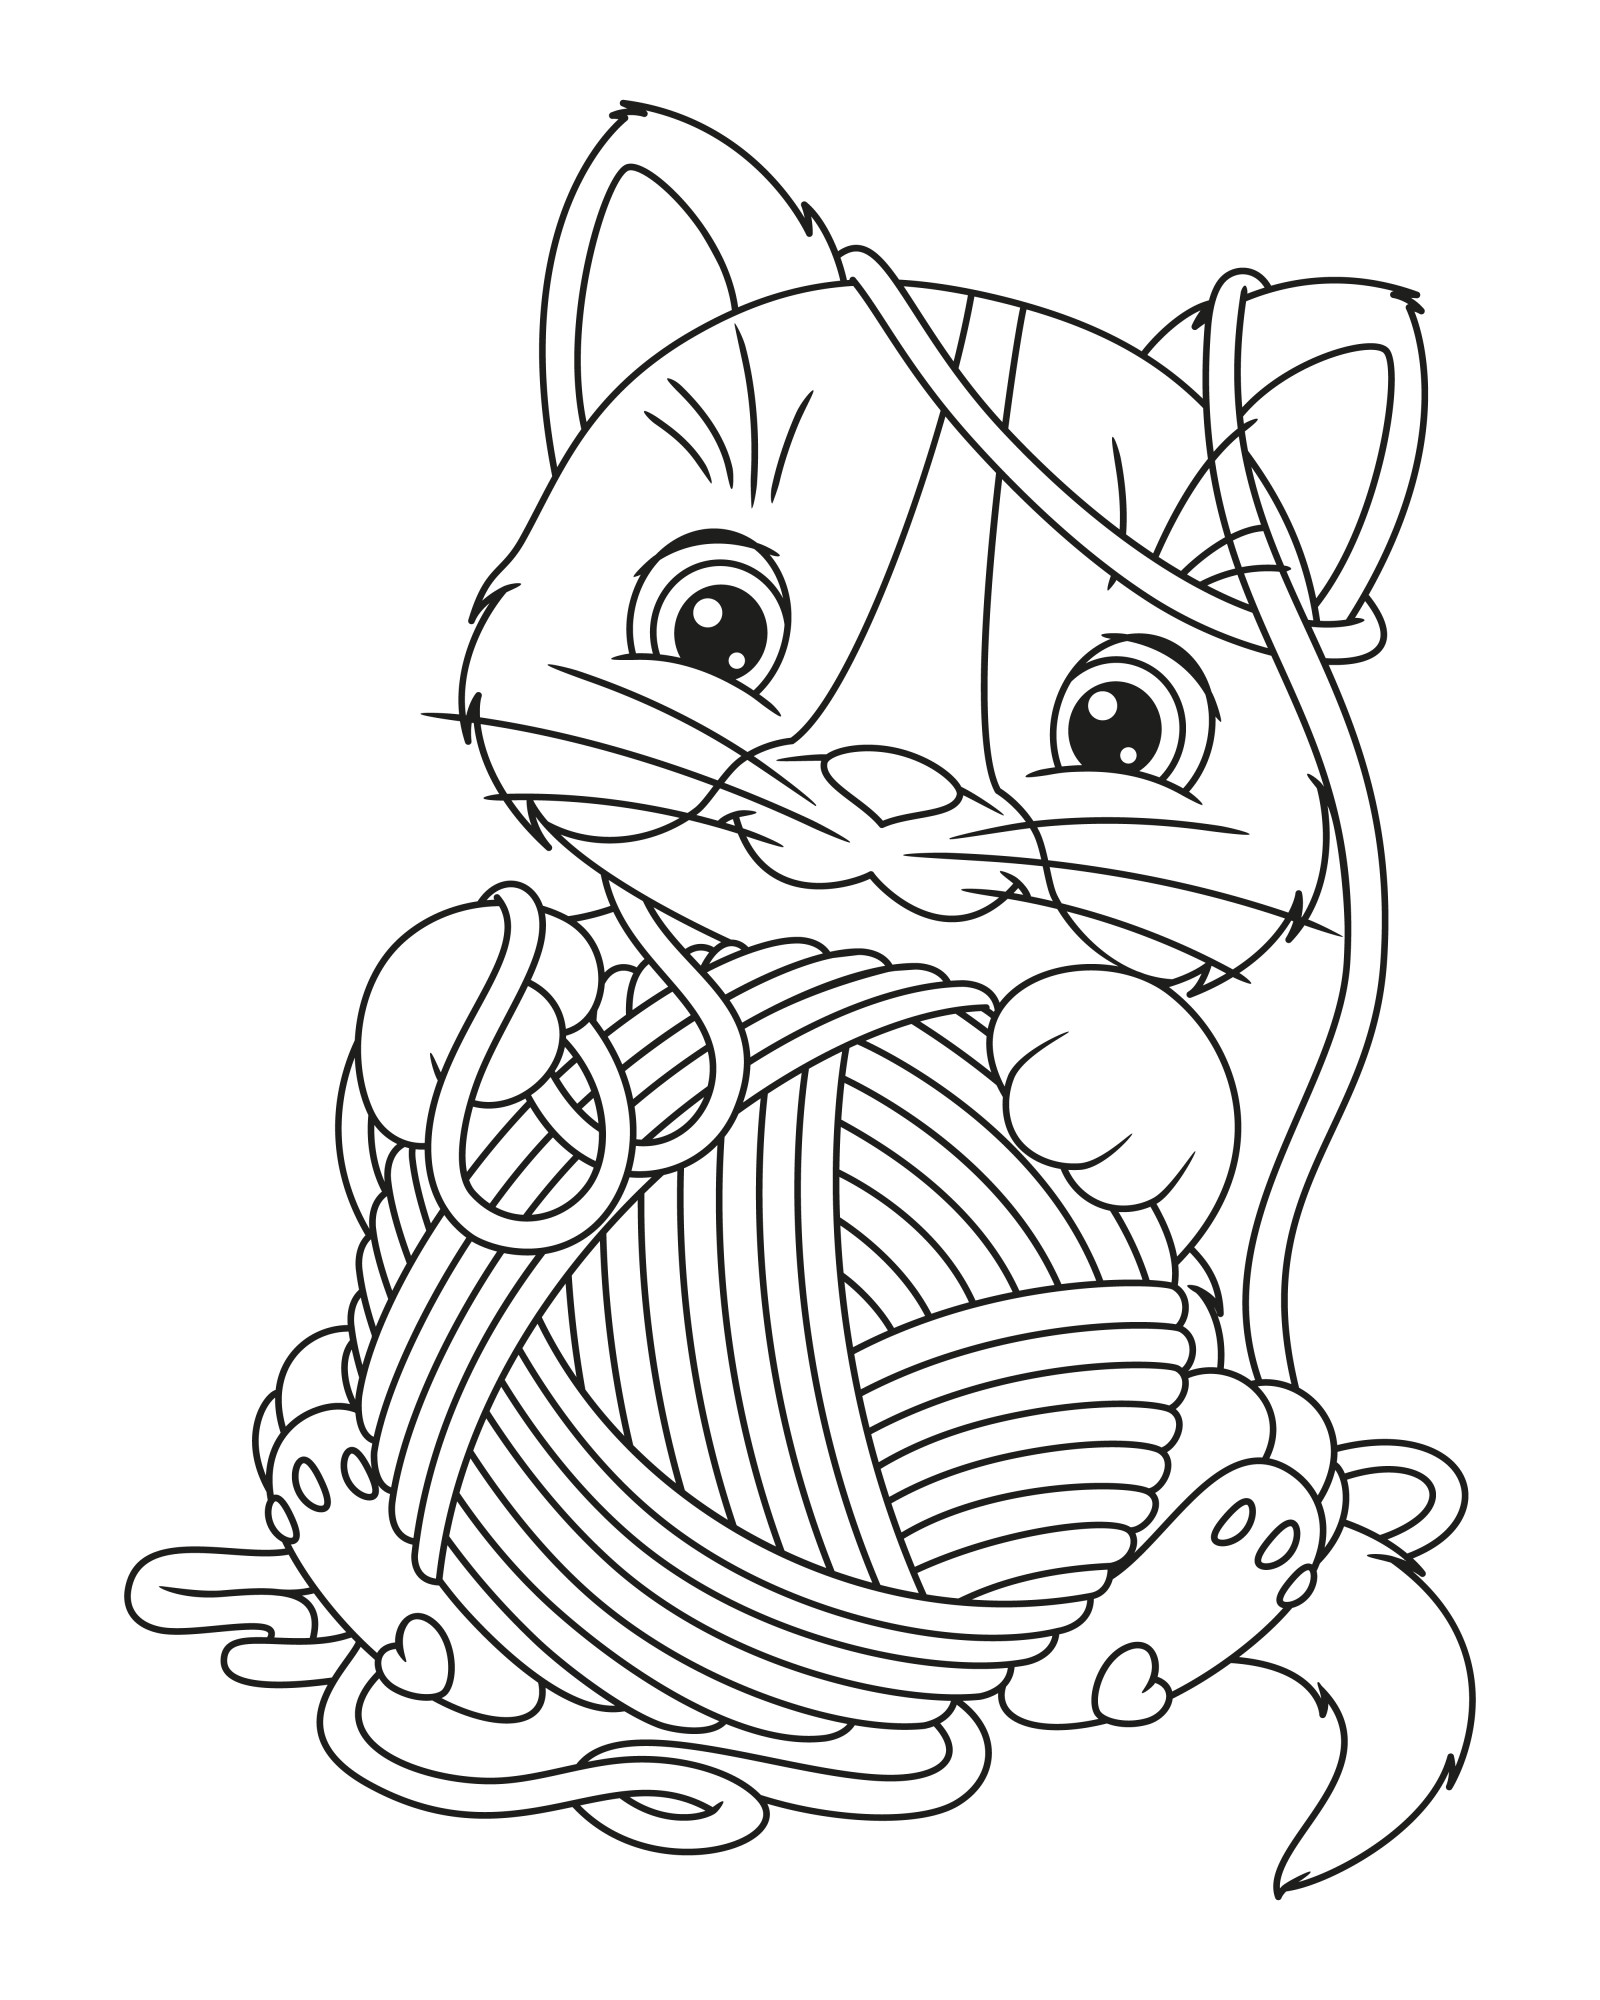 Раскраска для детей: кошка с клубком пряжи